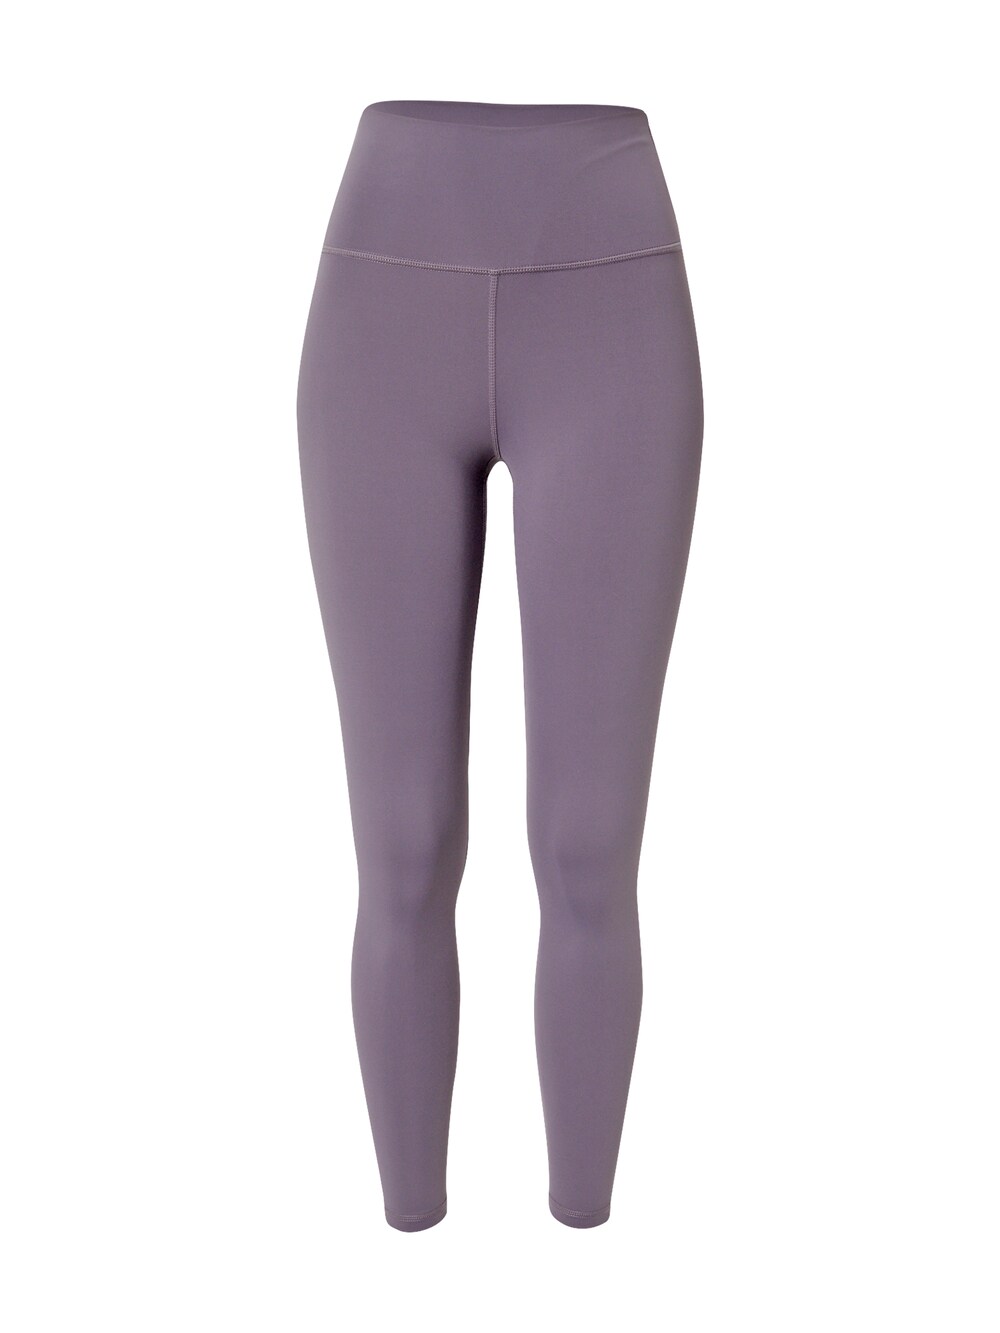 Узкие тренировочные брюки Athlecia GABY, лиловый